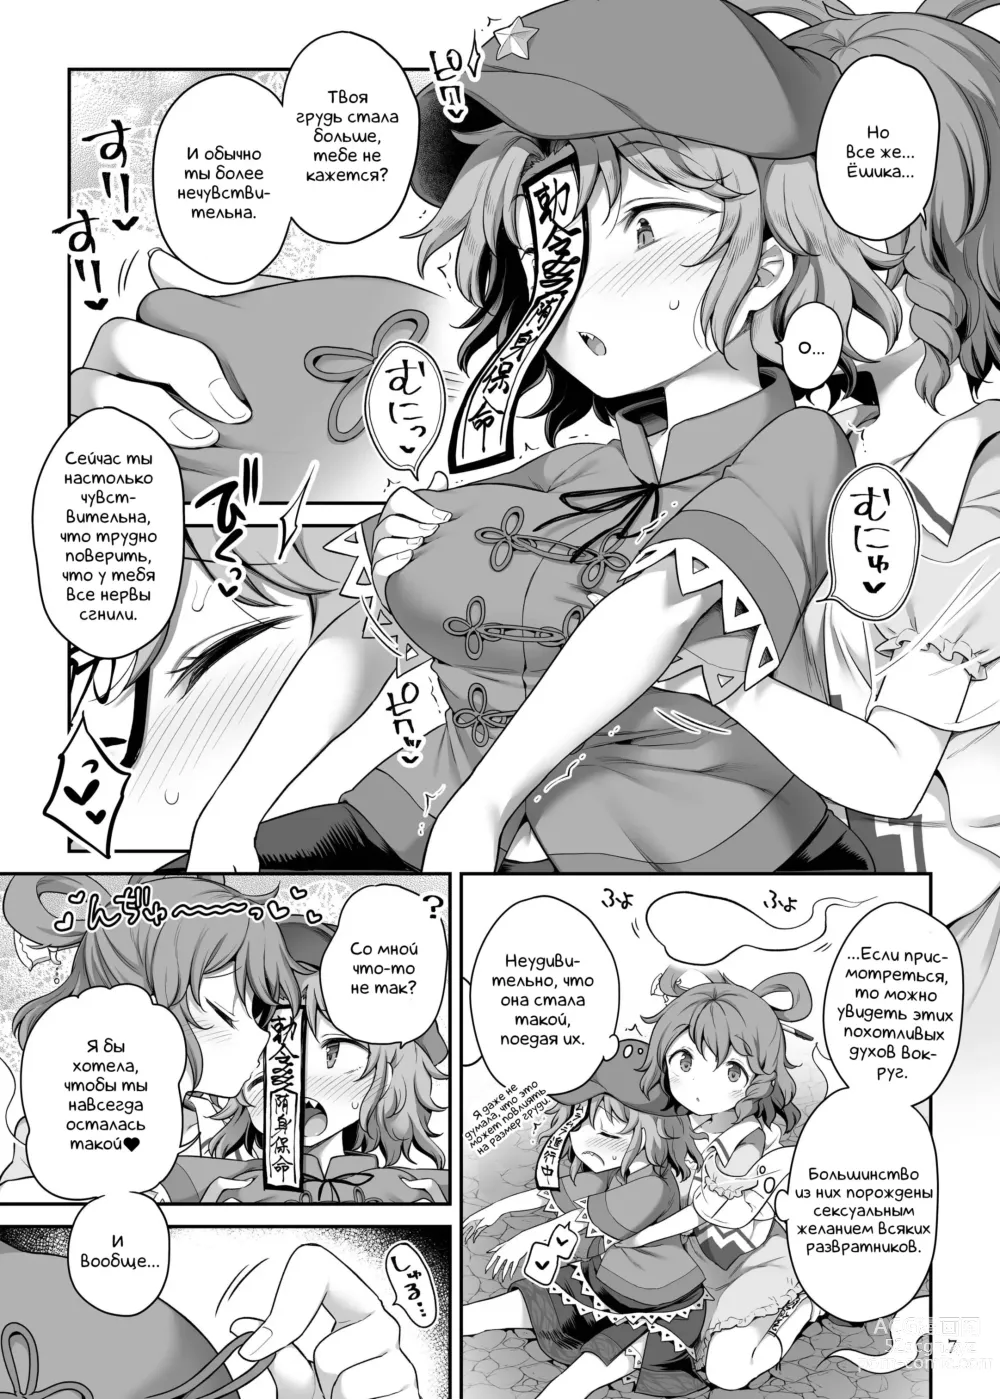 Page 7 of doujinshi Преданный сексуальному желанию труп